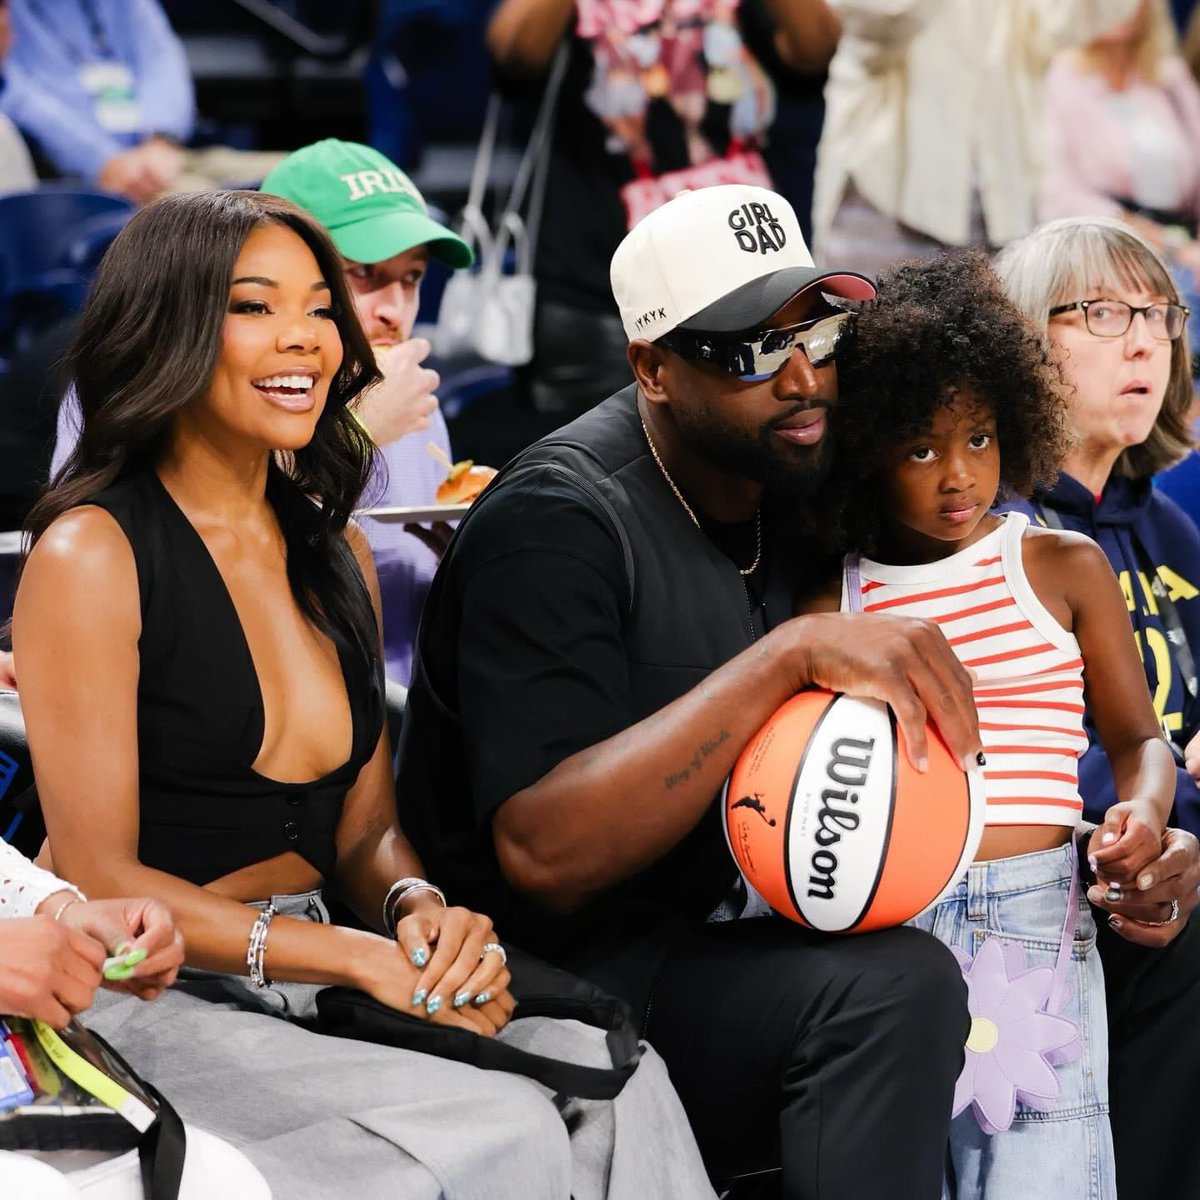 O astro da NBA, Dwyane Wade, elogiou a esposa Gabrielle Union em novas fotos no jogo do Sky em Chicago: “Minha esposa é maravilhosamente linda.” ❤️